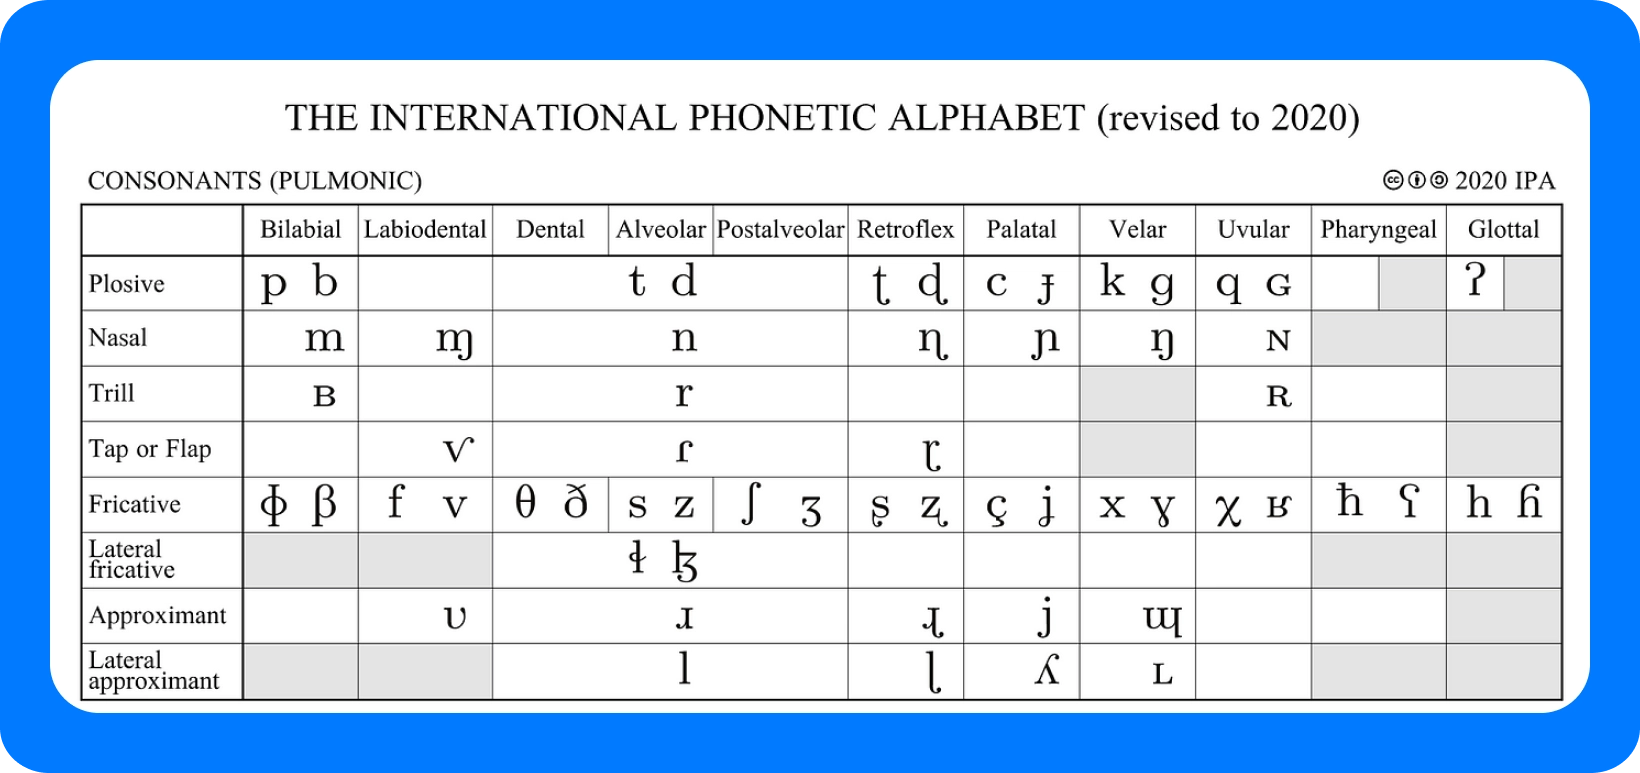 Tabella dell'alfabeto fonetico internazionale per le consonanti, rivista nel 2020, che descrive in dettaglio i punti di articolazione.